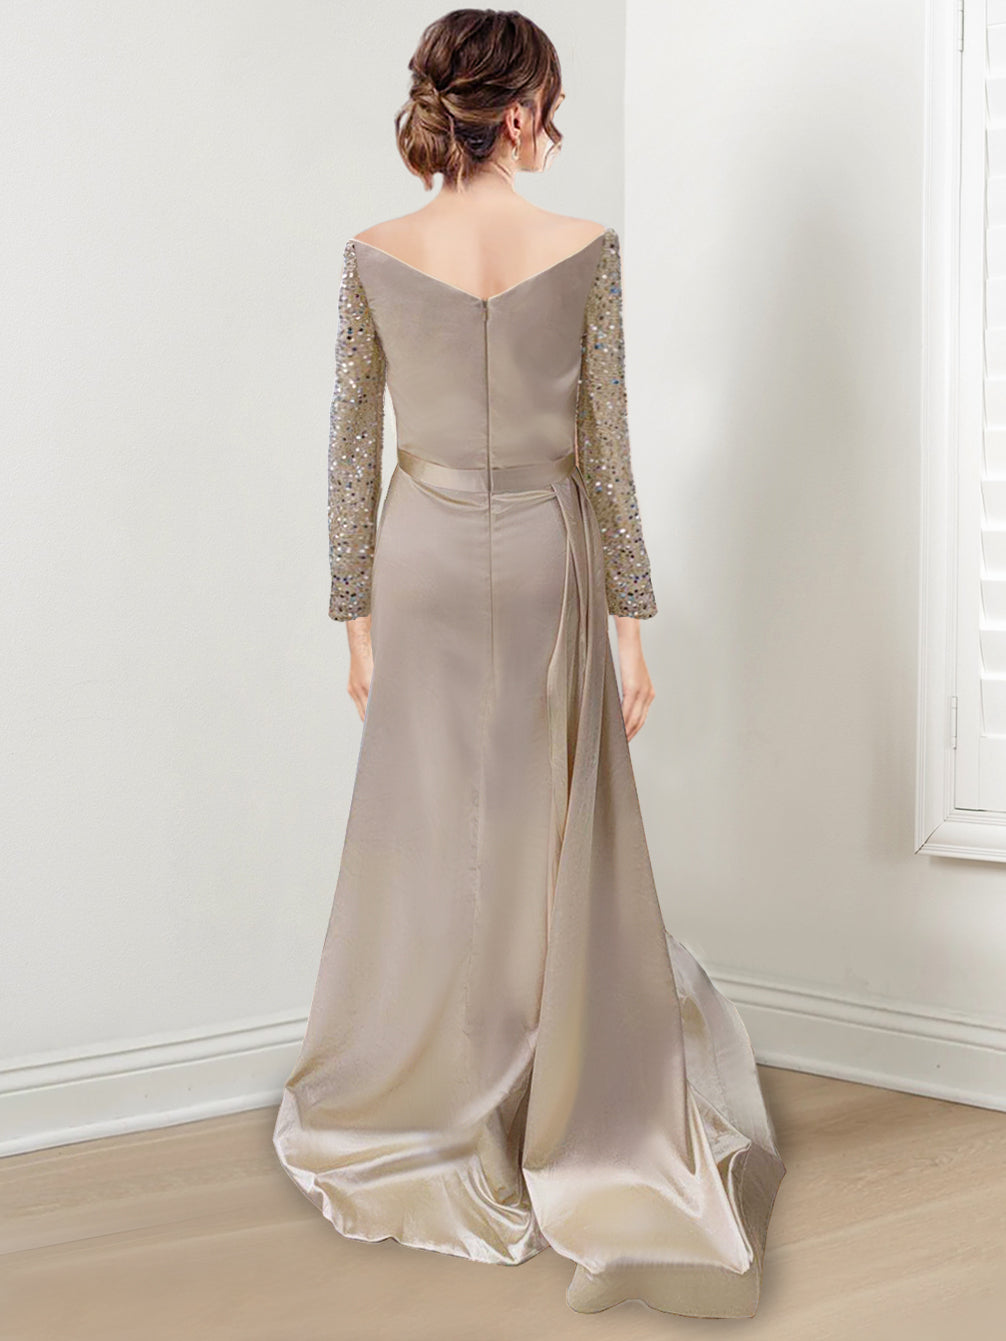 Sheath/Column Off-the-Shoulder Floor-length Long Prom Dresses With Split Side & Sequins